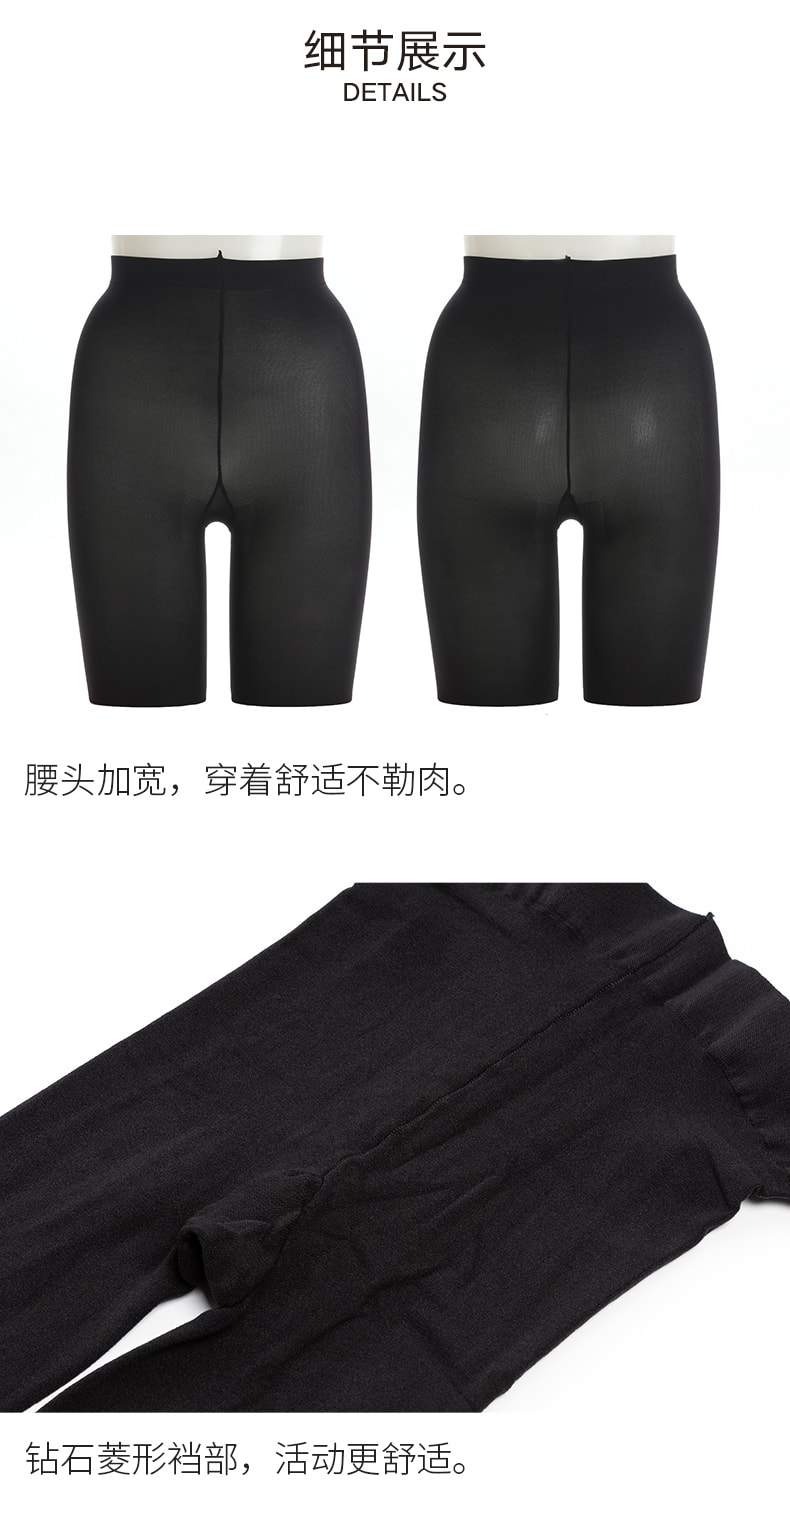 【日本直邮】ATSUGI 厚木80D 舒软 发热裤袜 L-LL 黑色 1双